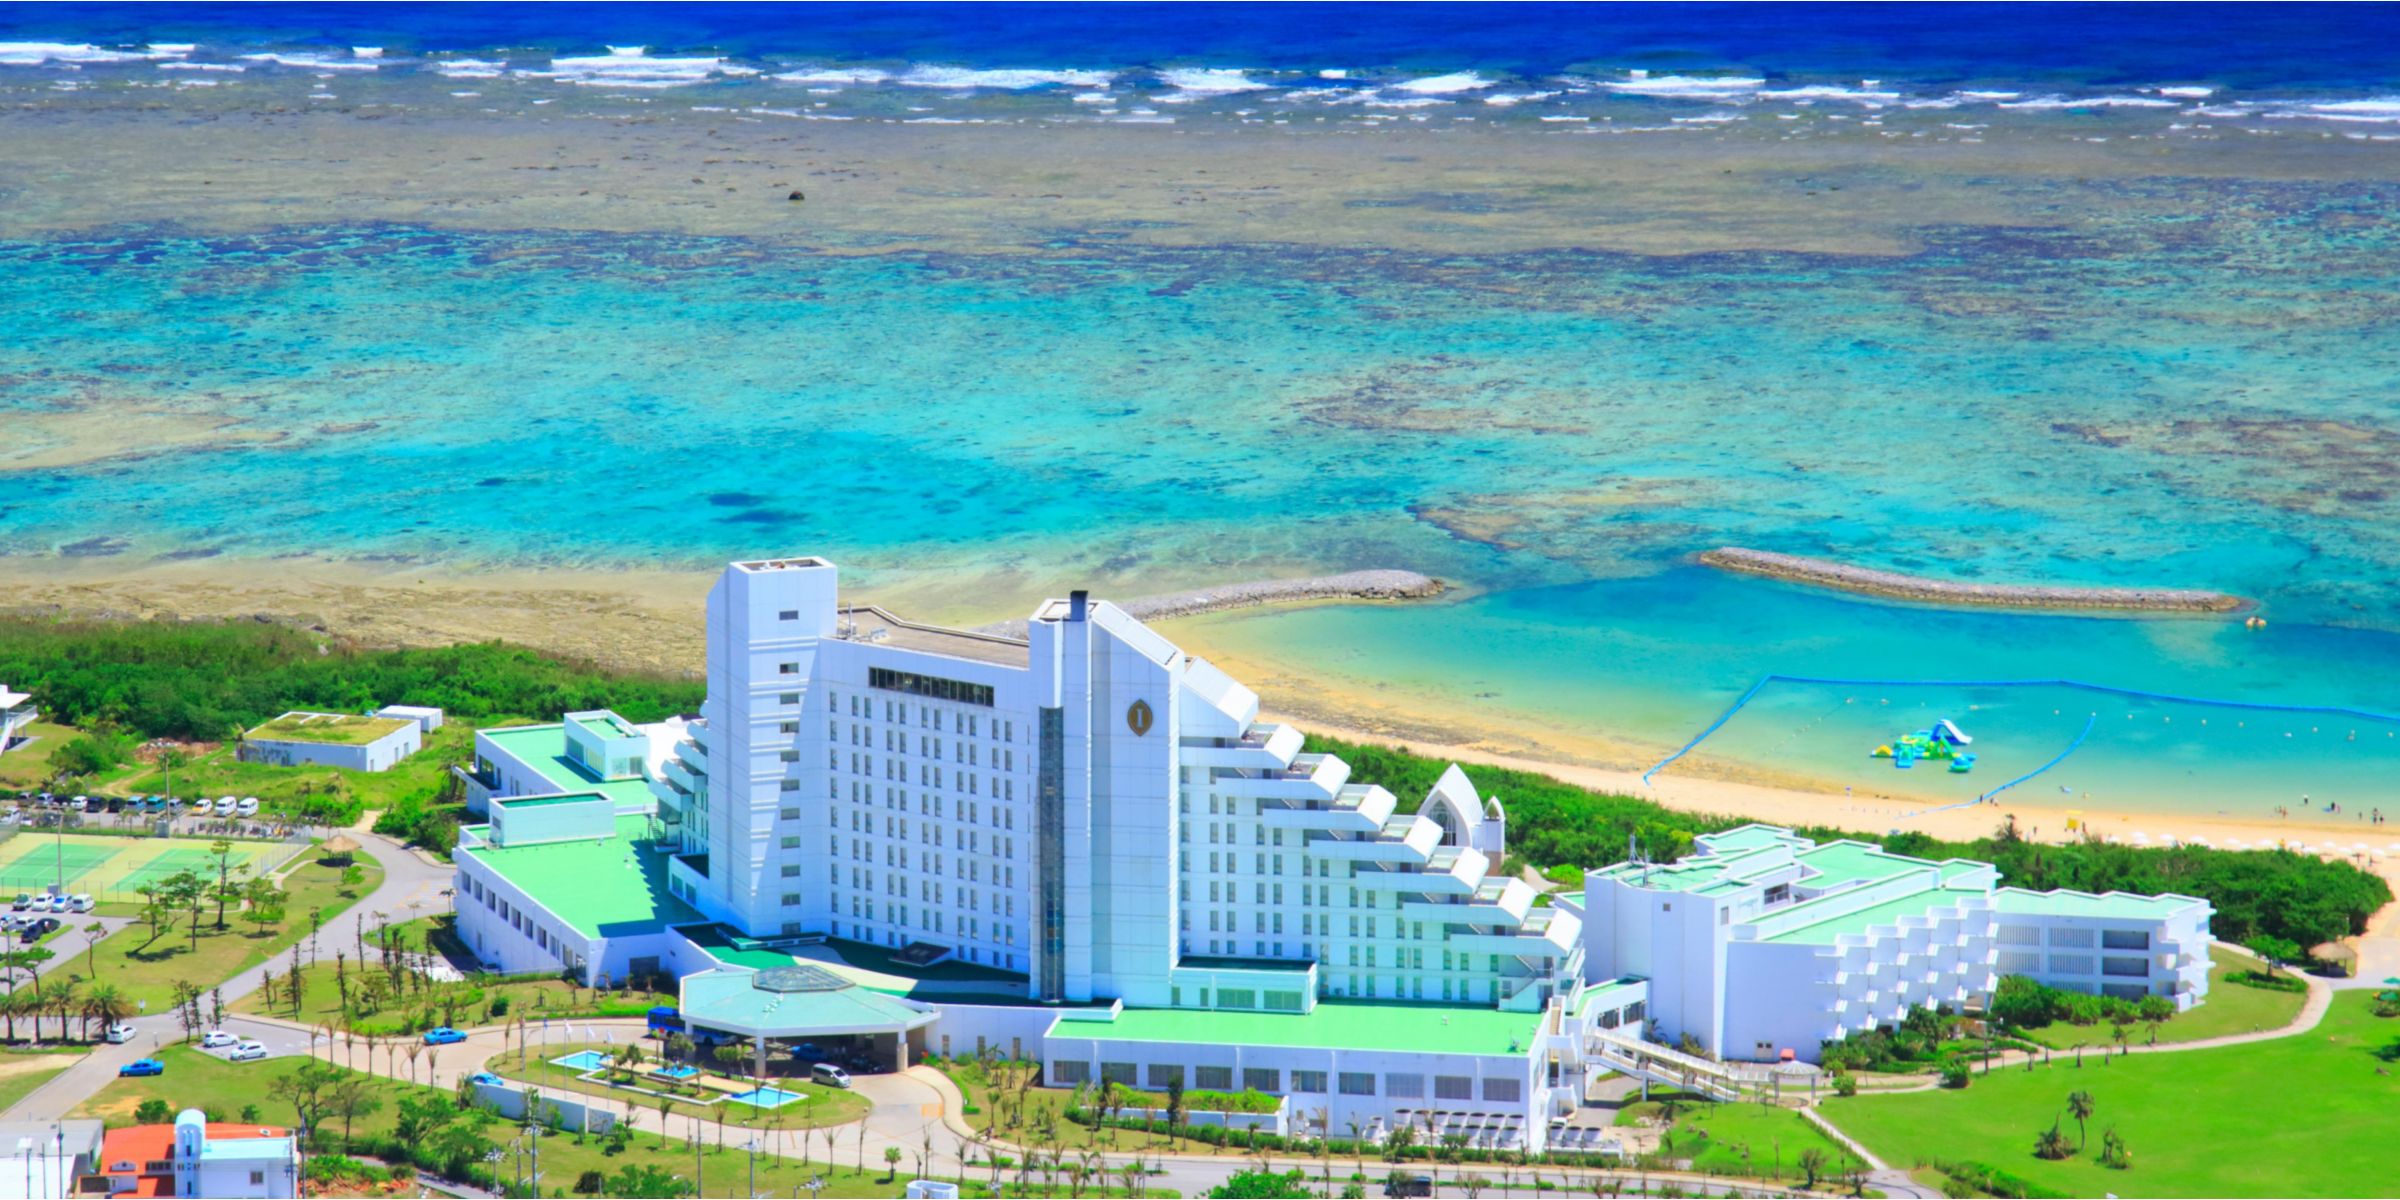 InterContinental-ANA Ishigaki Resort - Ishigaki-shi Okinawa